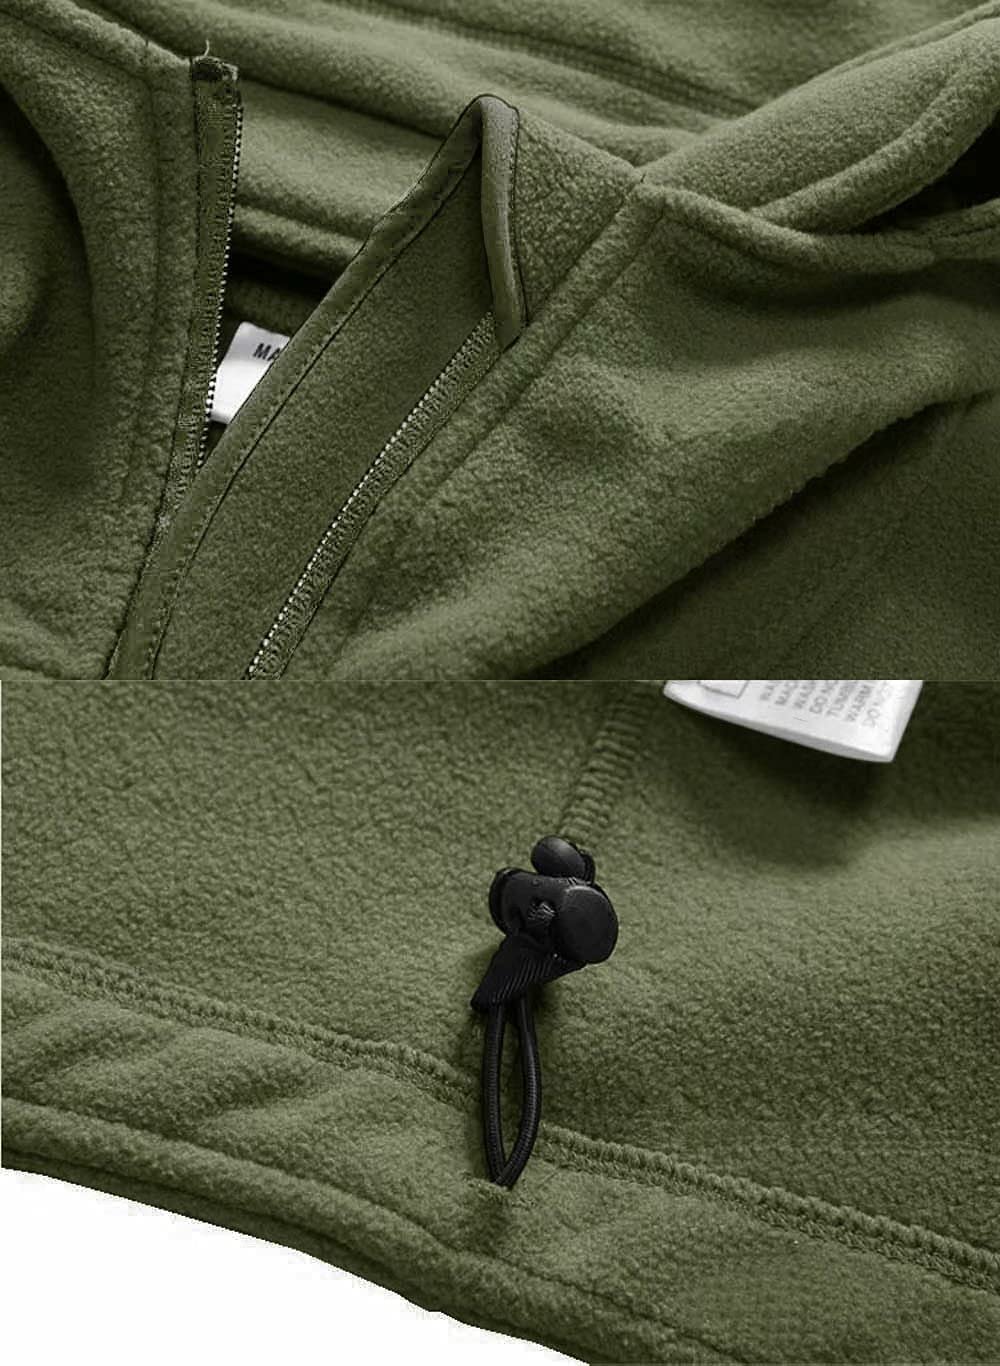 Men's Outdoor Tactical Zip up Jacket